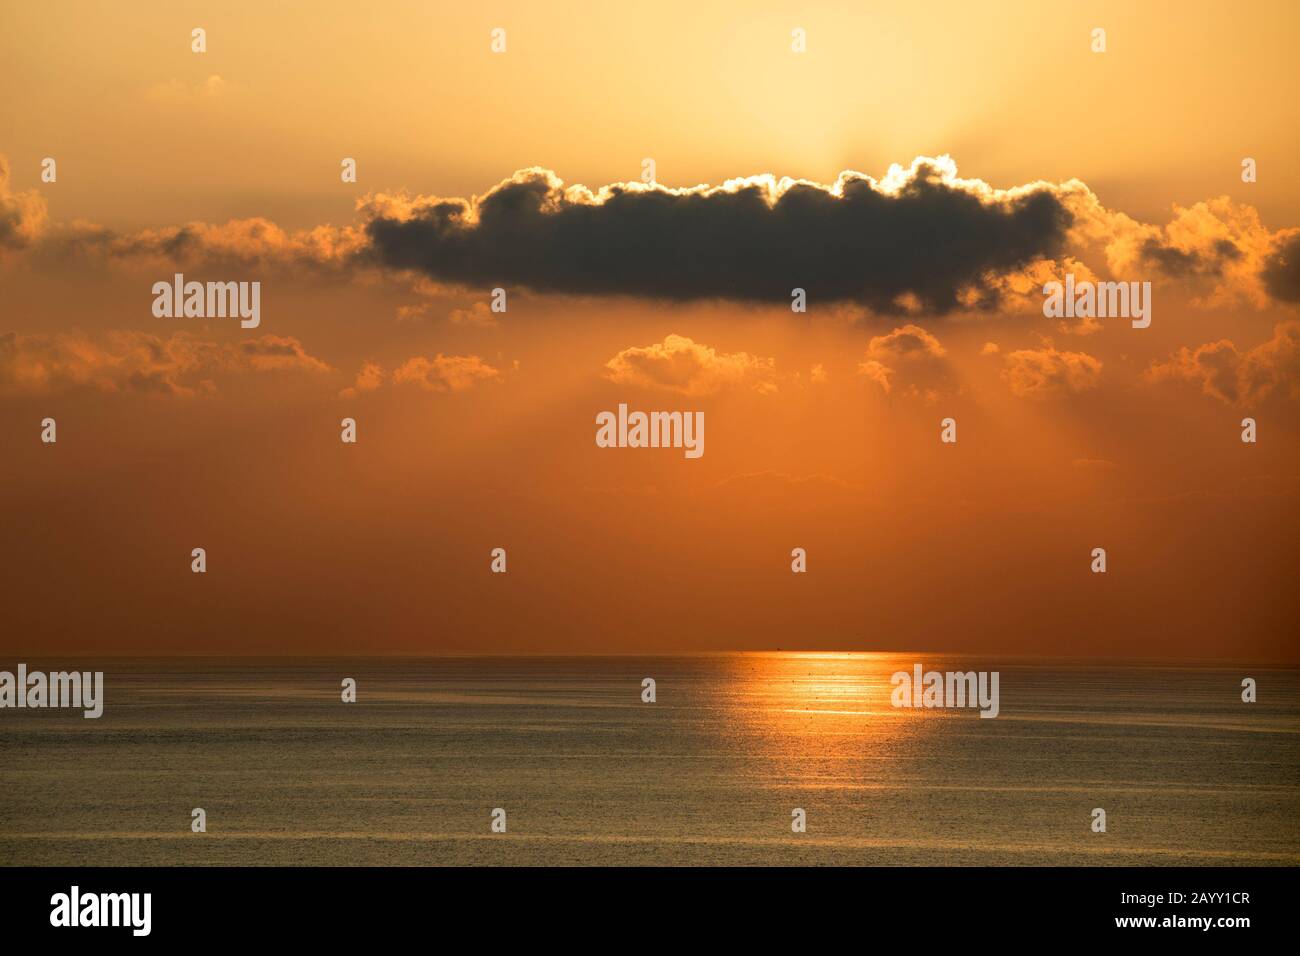 Nuvola scura che blocca il sole tramontato nel cielo arancione della sera sul Mar Mediterraneo Foto Stock